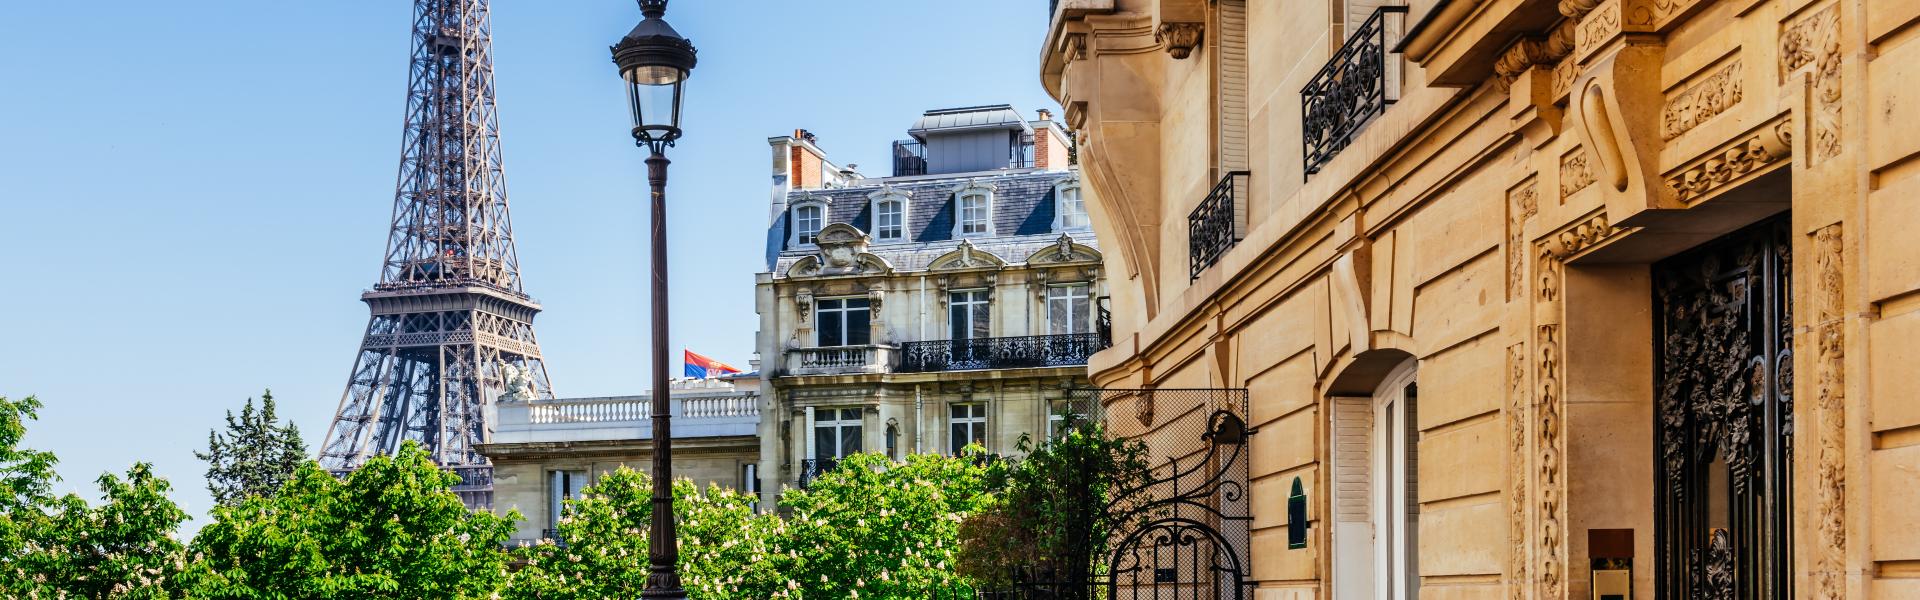 Znajdź najlepsze noclegi i apartamenty w Paryżu - Casamundo